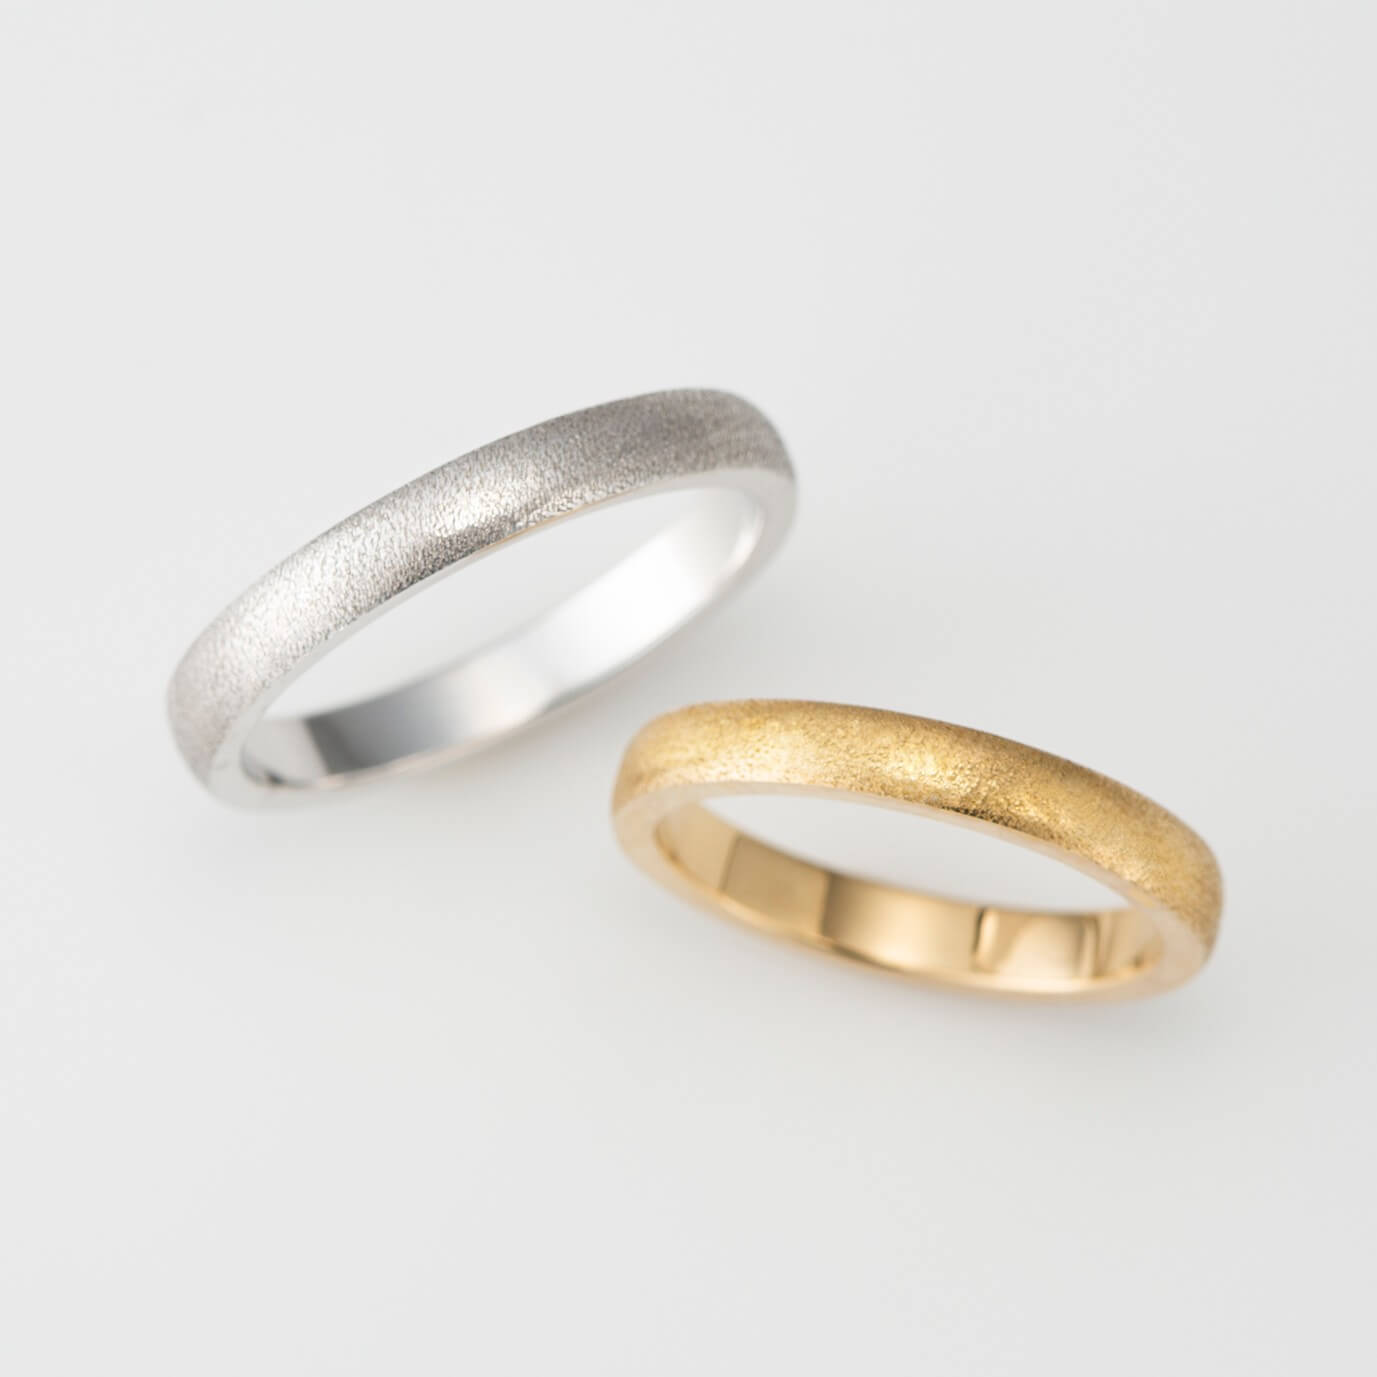 アンティーク調のマットなオーダーメイドの結婚指輪